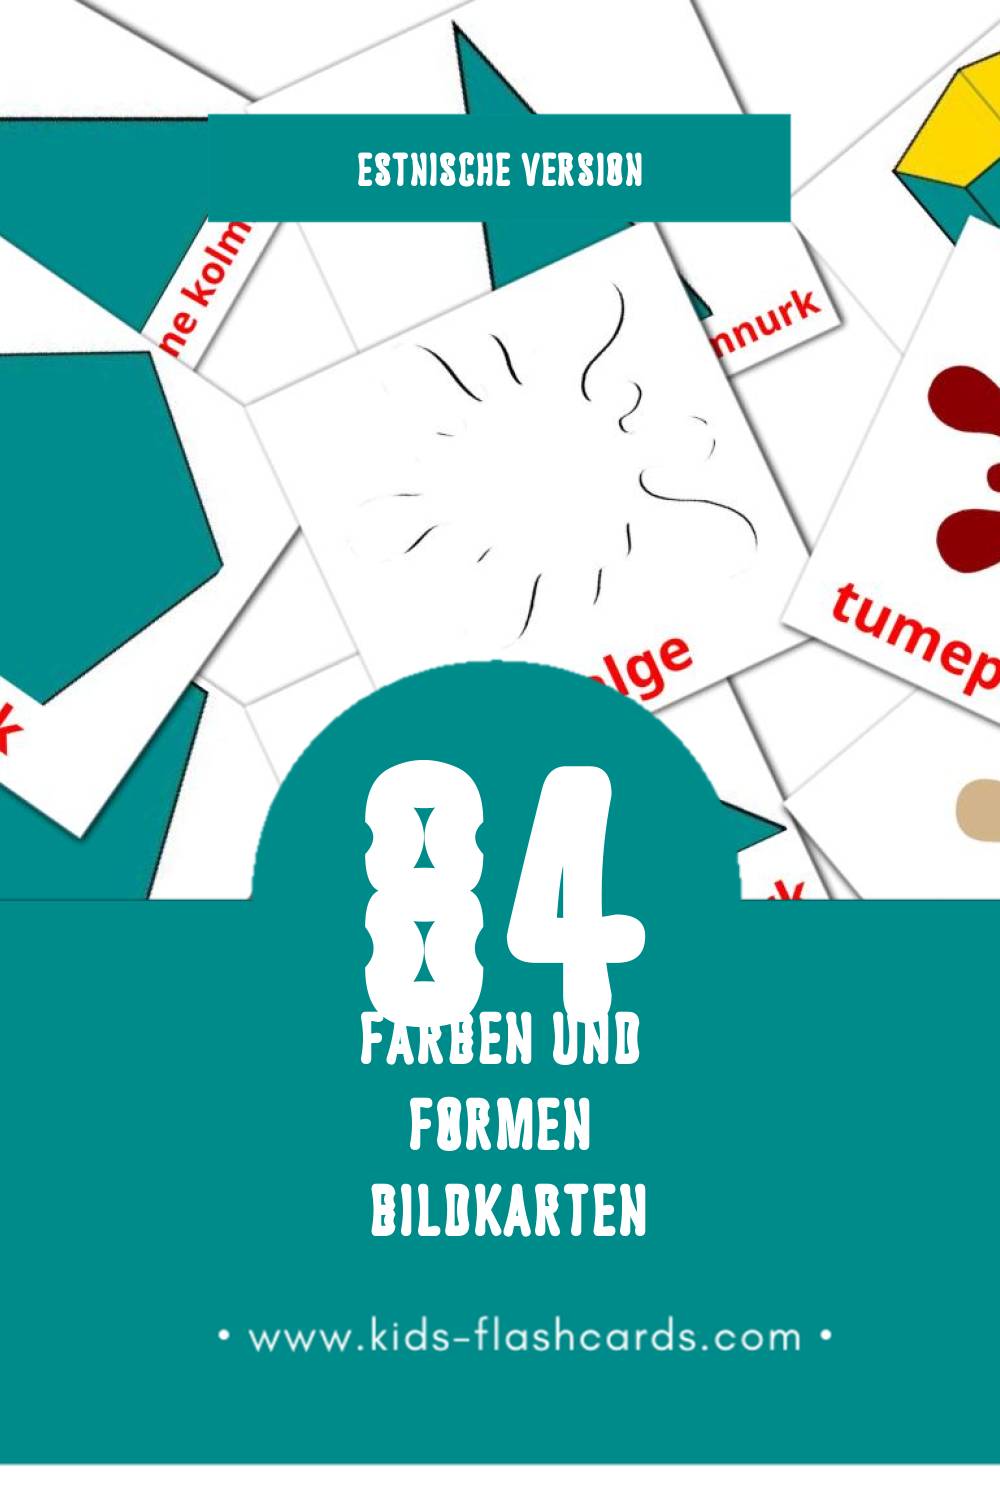 Visual värvid Flashcards für Kleinkinder (84 Karten in Estnisch)